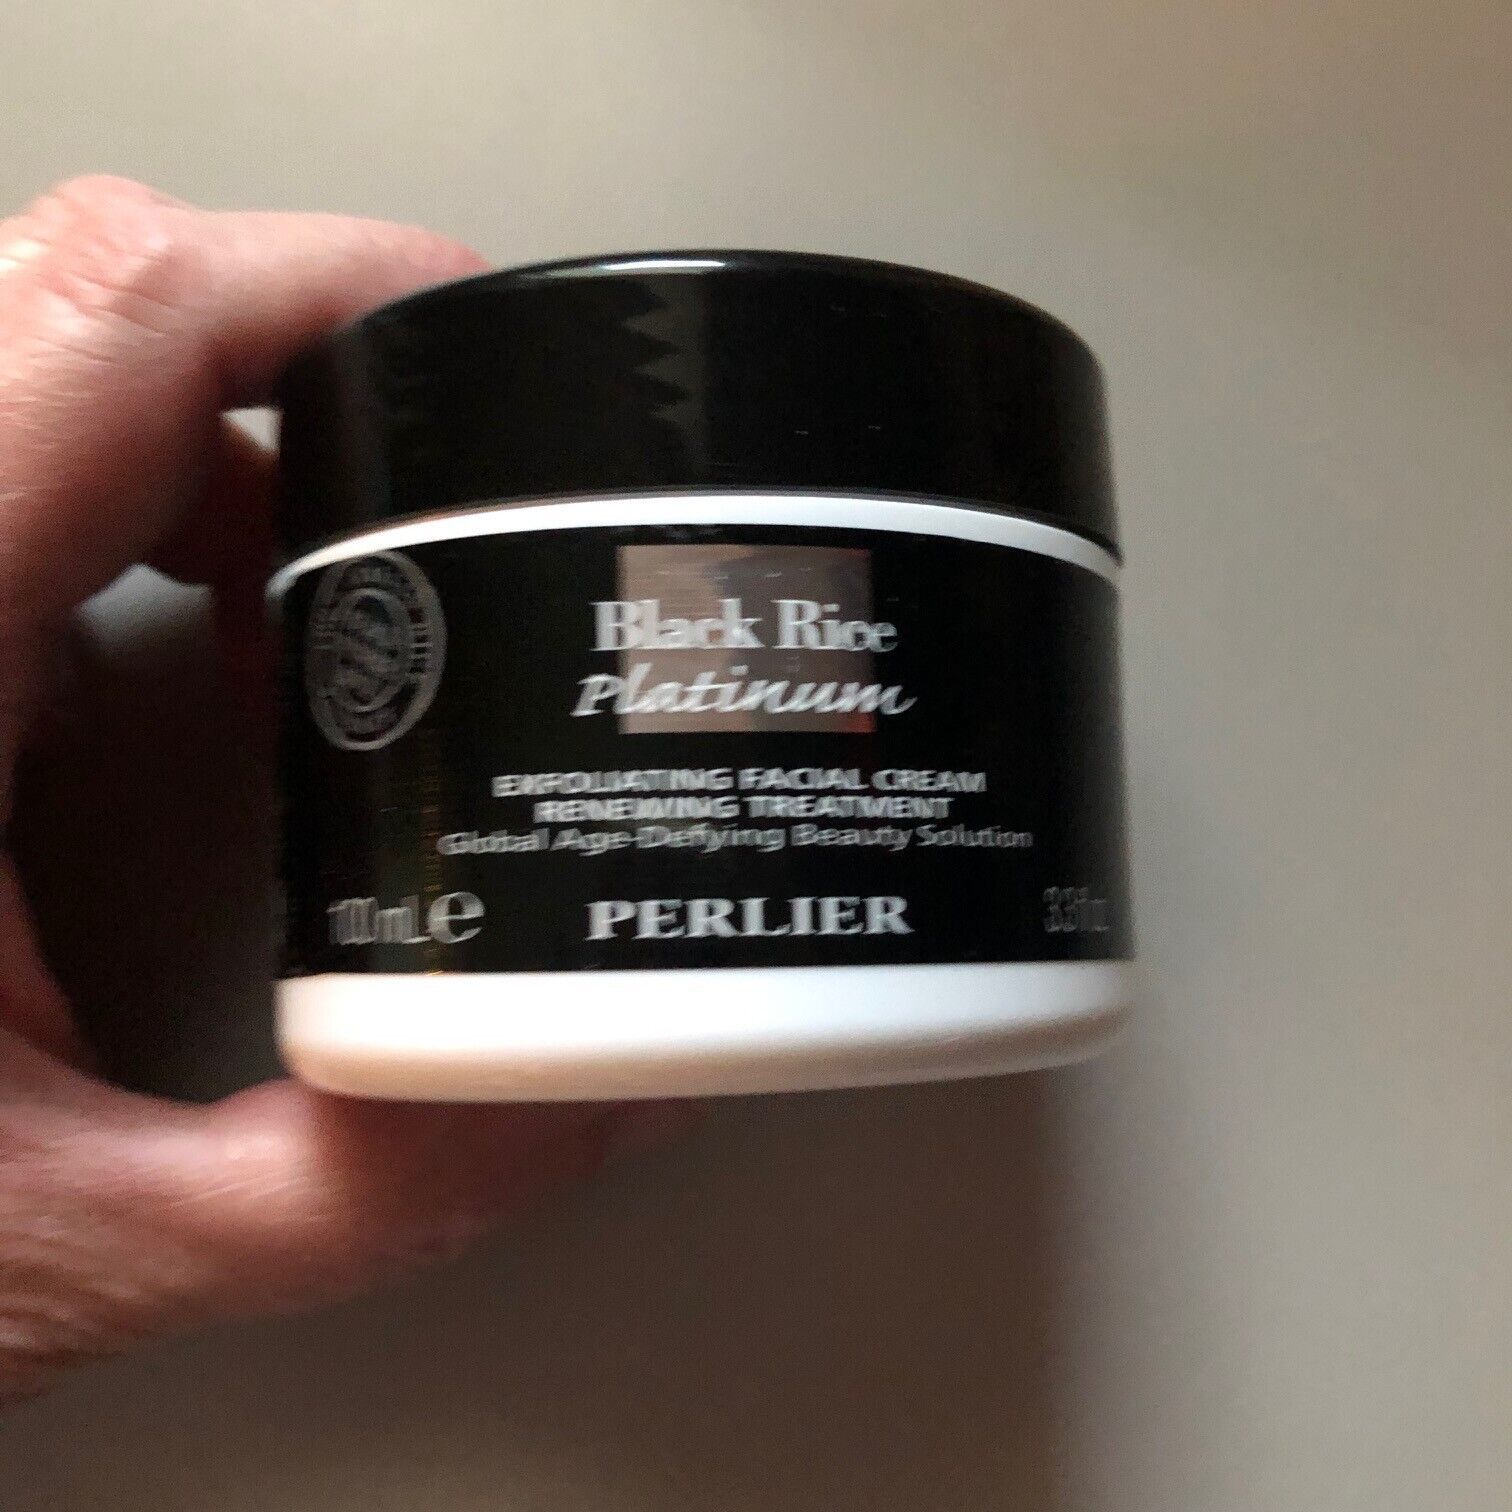 NEW Perlier Black Rice Platinum Exfoliating Facial Cream 3.3 OZ Sealed No Box - £14.73 GBP